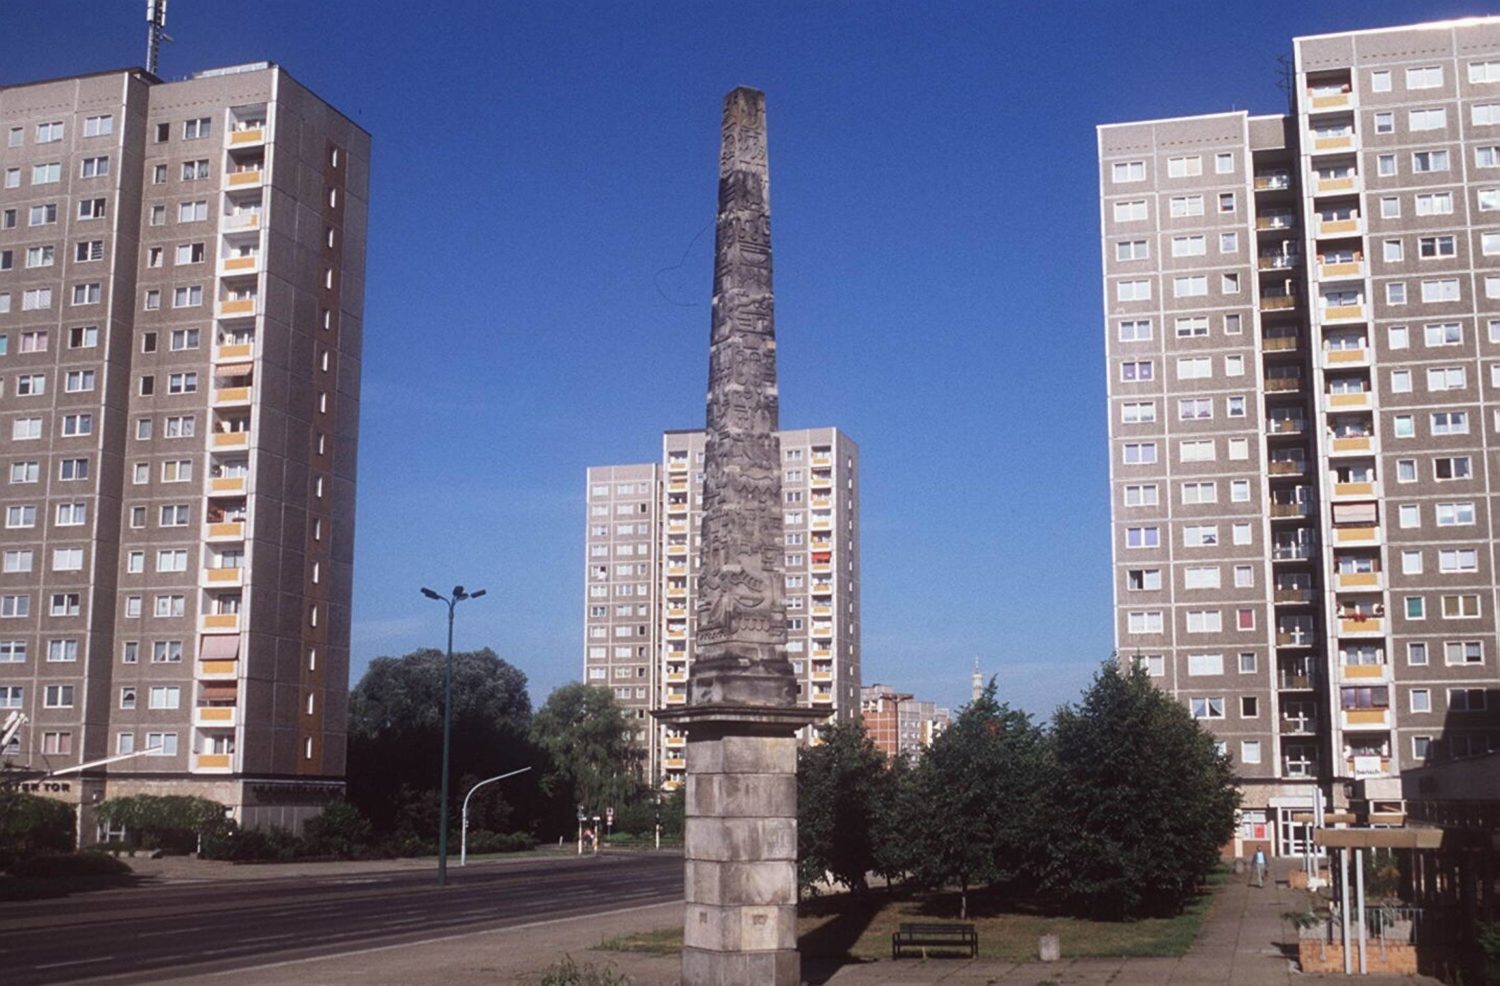 Potsdam in den 1990er-Jahren: Obelisk umgeben von Neubauten in der Breite Straße, Juli 1995. Foto: Imago/Teutopress